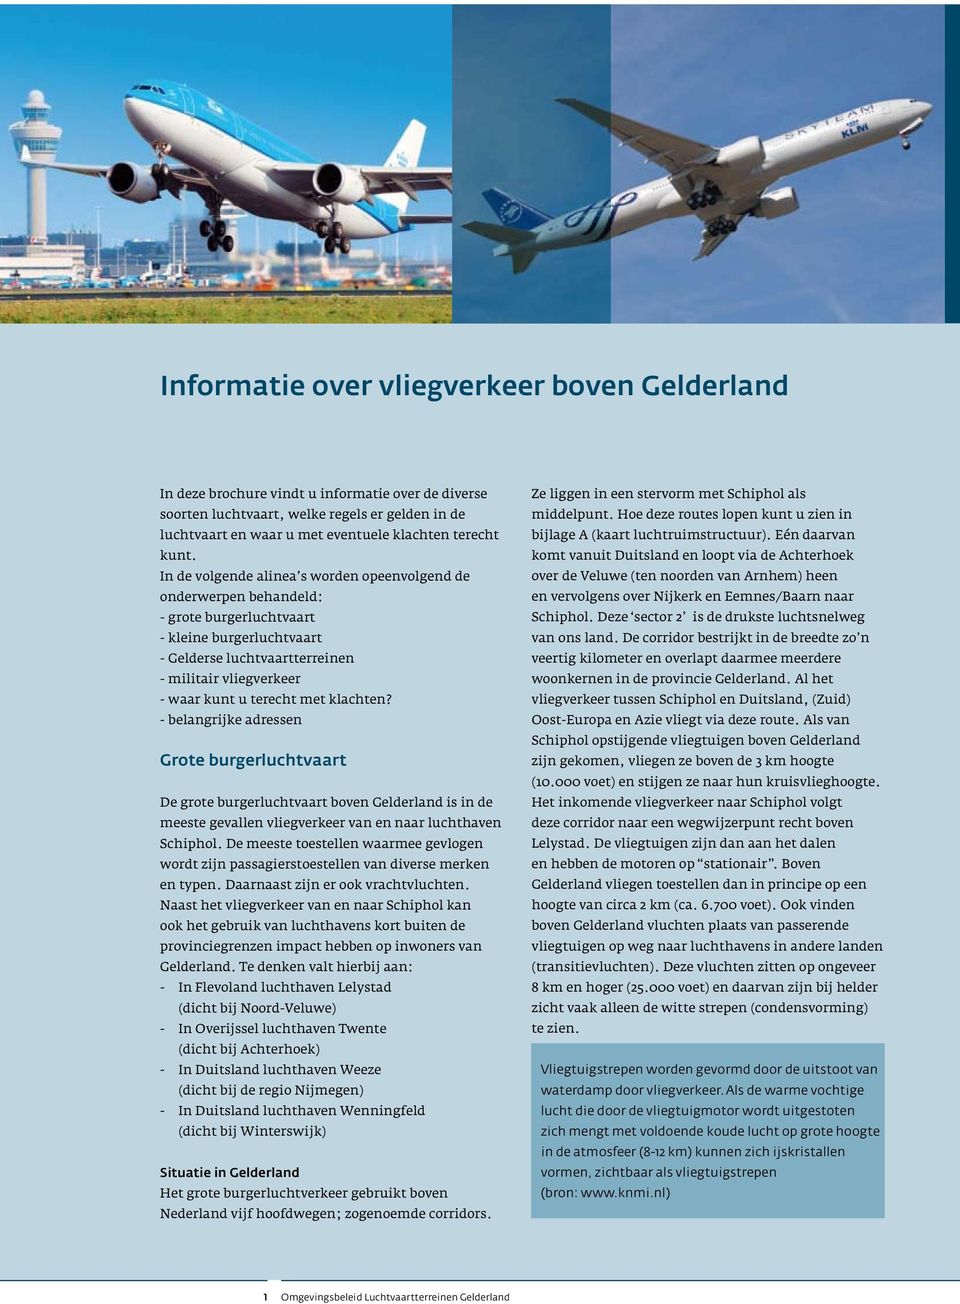 terecht met klachten? - belangrijke adressen Grote burgerluchtvaart De grote burgerluchtvaart boven Gelderland is in de meeste gevallen vliegverkeer van en naar luchthaven Schiphol.